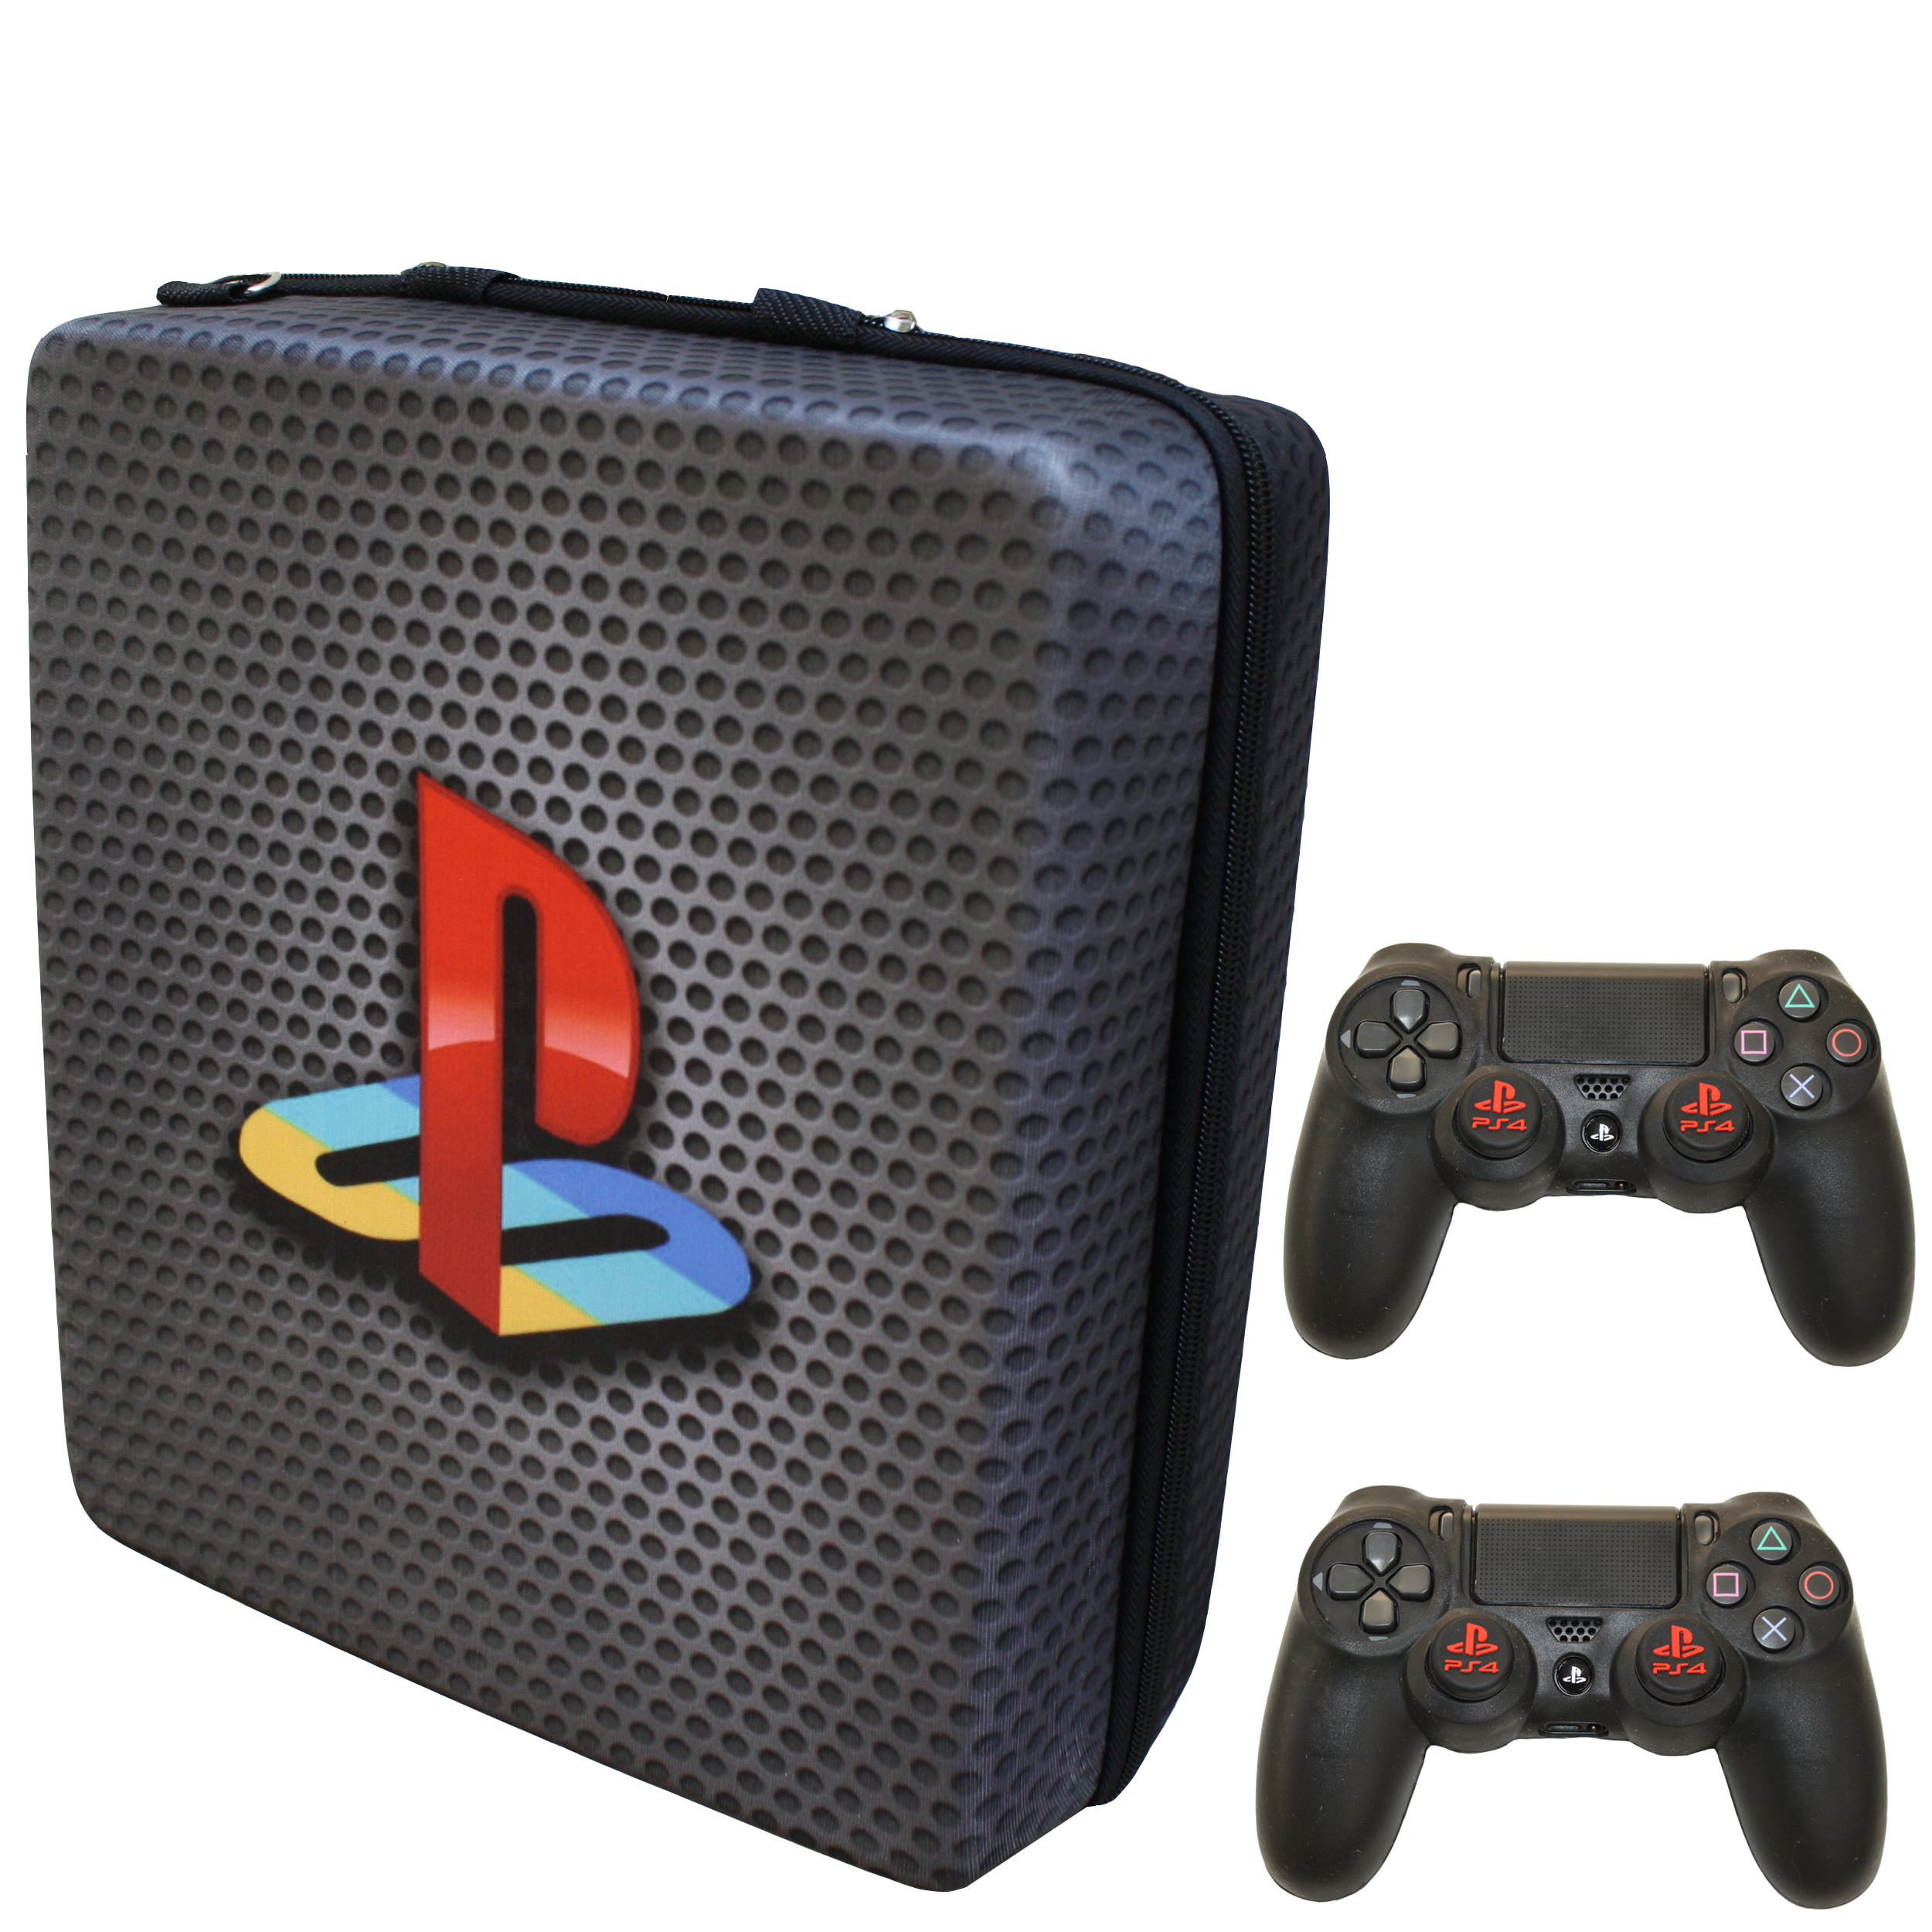 کیف حمل کنسول بازی پلی استیشن 4 مدل playstation کد 002 به همراه محافظ دسته و روکش آنالوگ